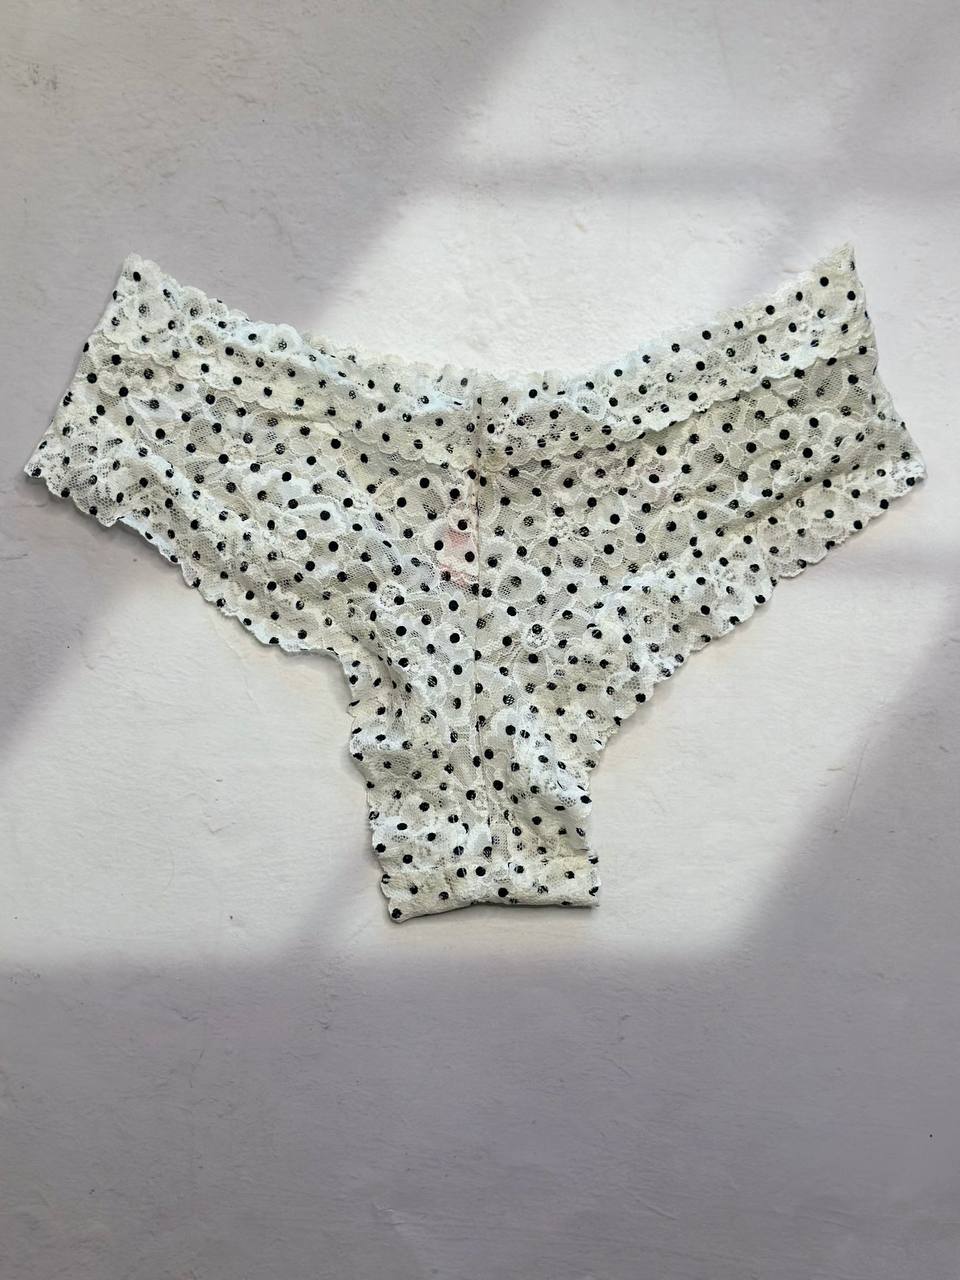 Victoria secret underwear